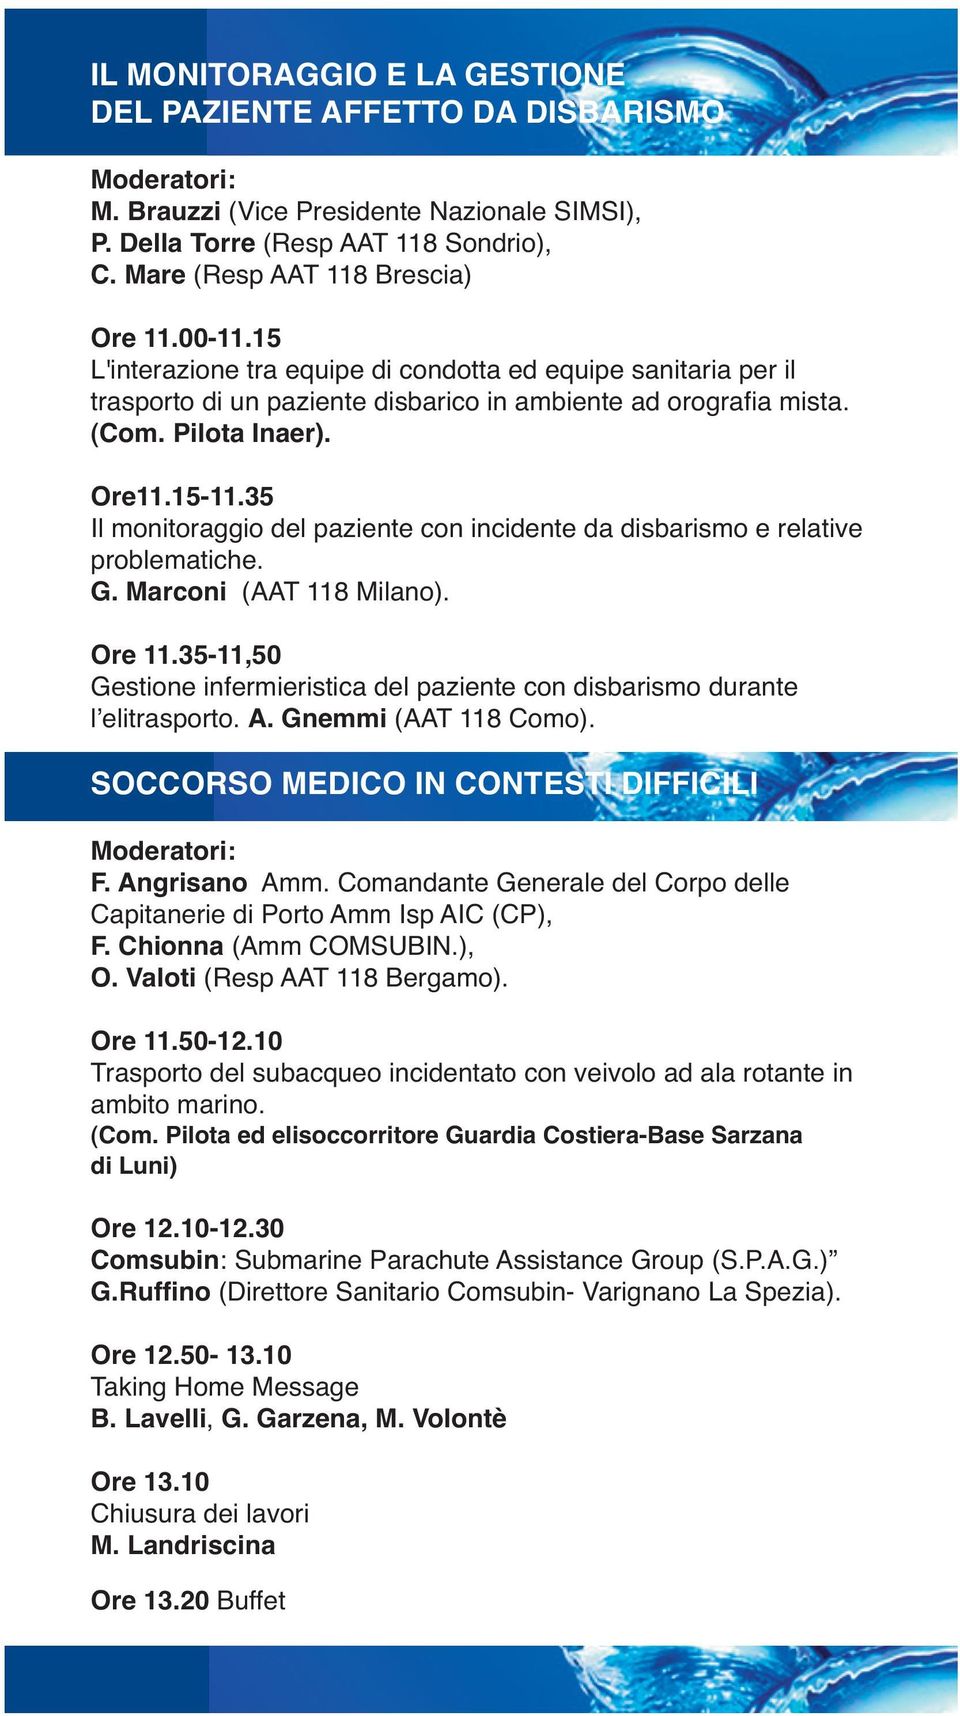 35 Il monitoraggio del paziente con incidente da disbarismo e relative problematiche. G. Marconi (AAT 118 Milano). Ore 11.